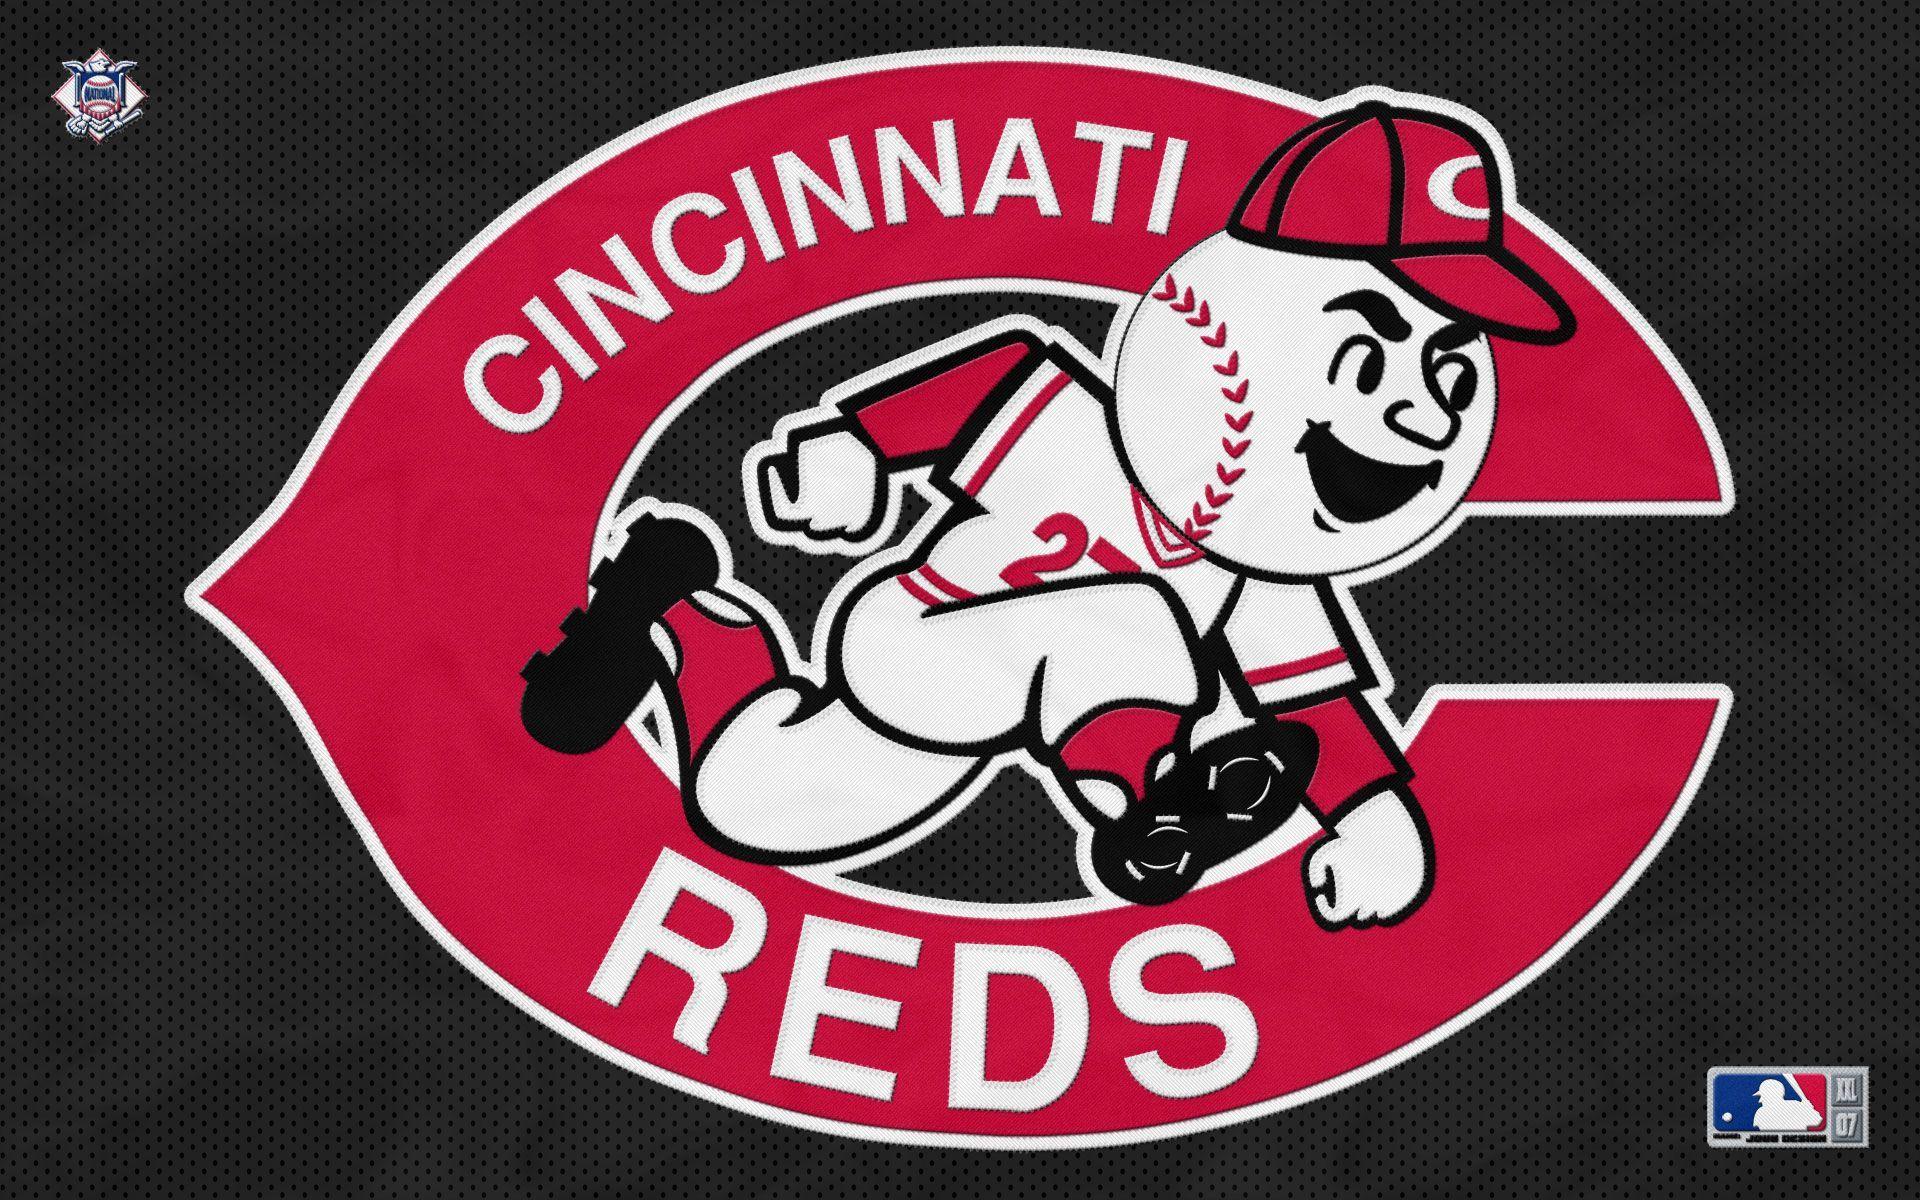 Cincinnati Reds Desktop Wallpapers Wallpaper Cave